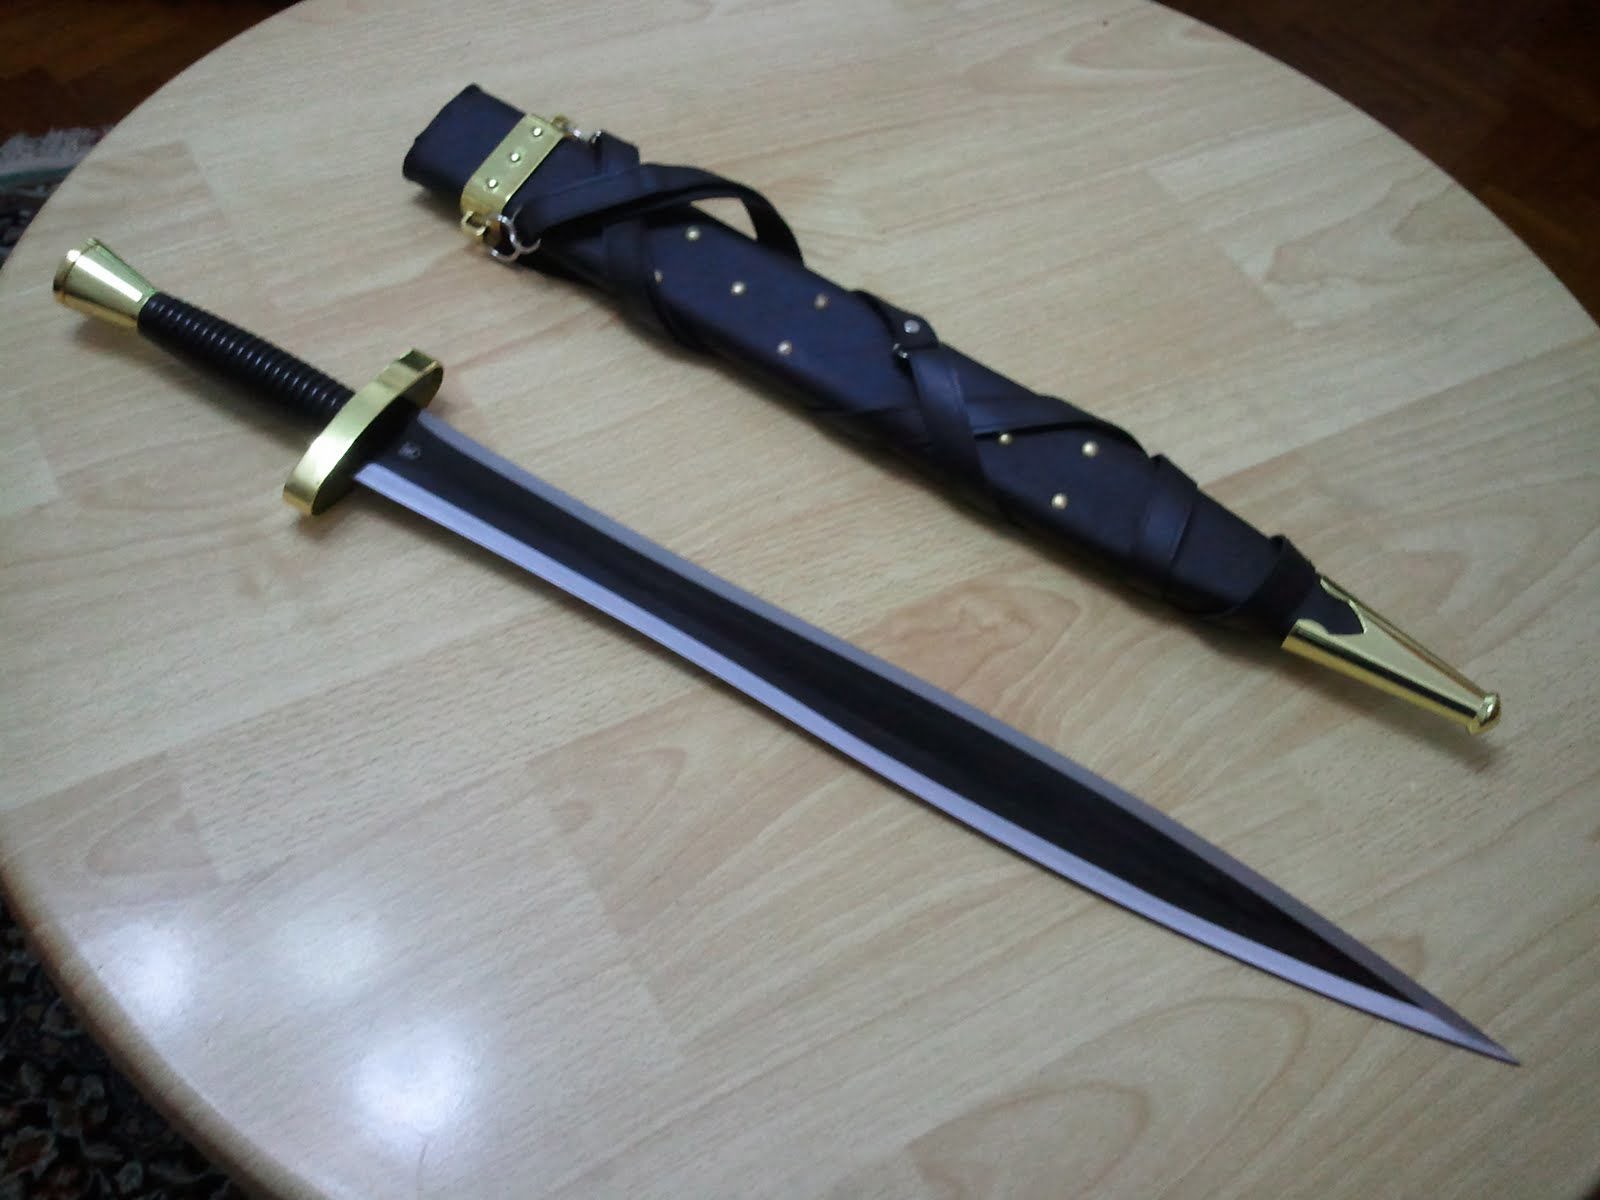 Short sword. Ксифос меч. Ксифос Гладиус меч. Греческий меч Ксифос. Меч короткий Ксифос.